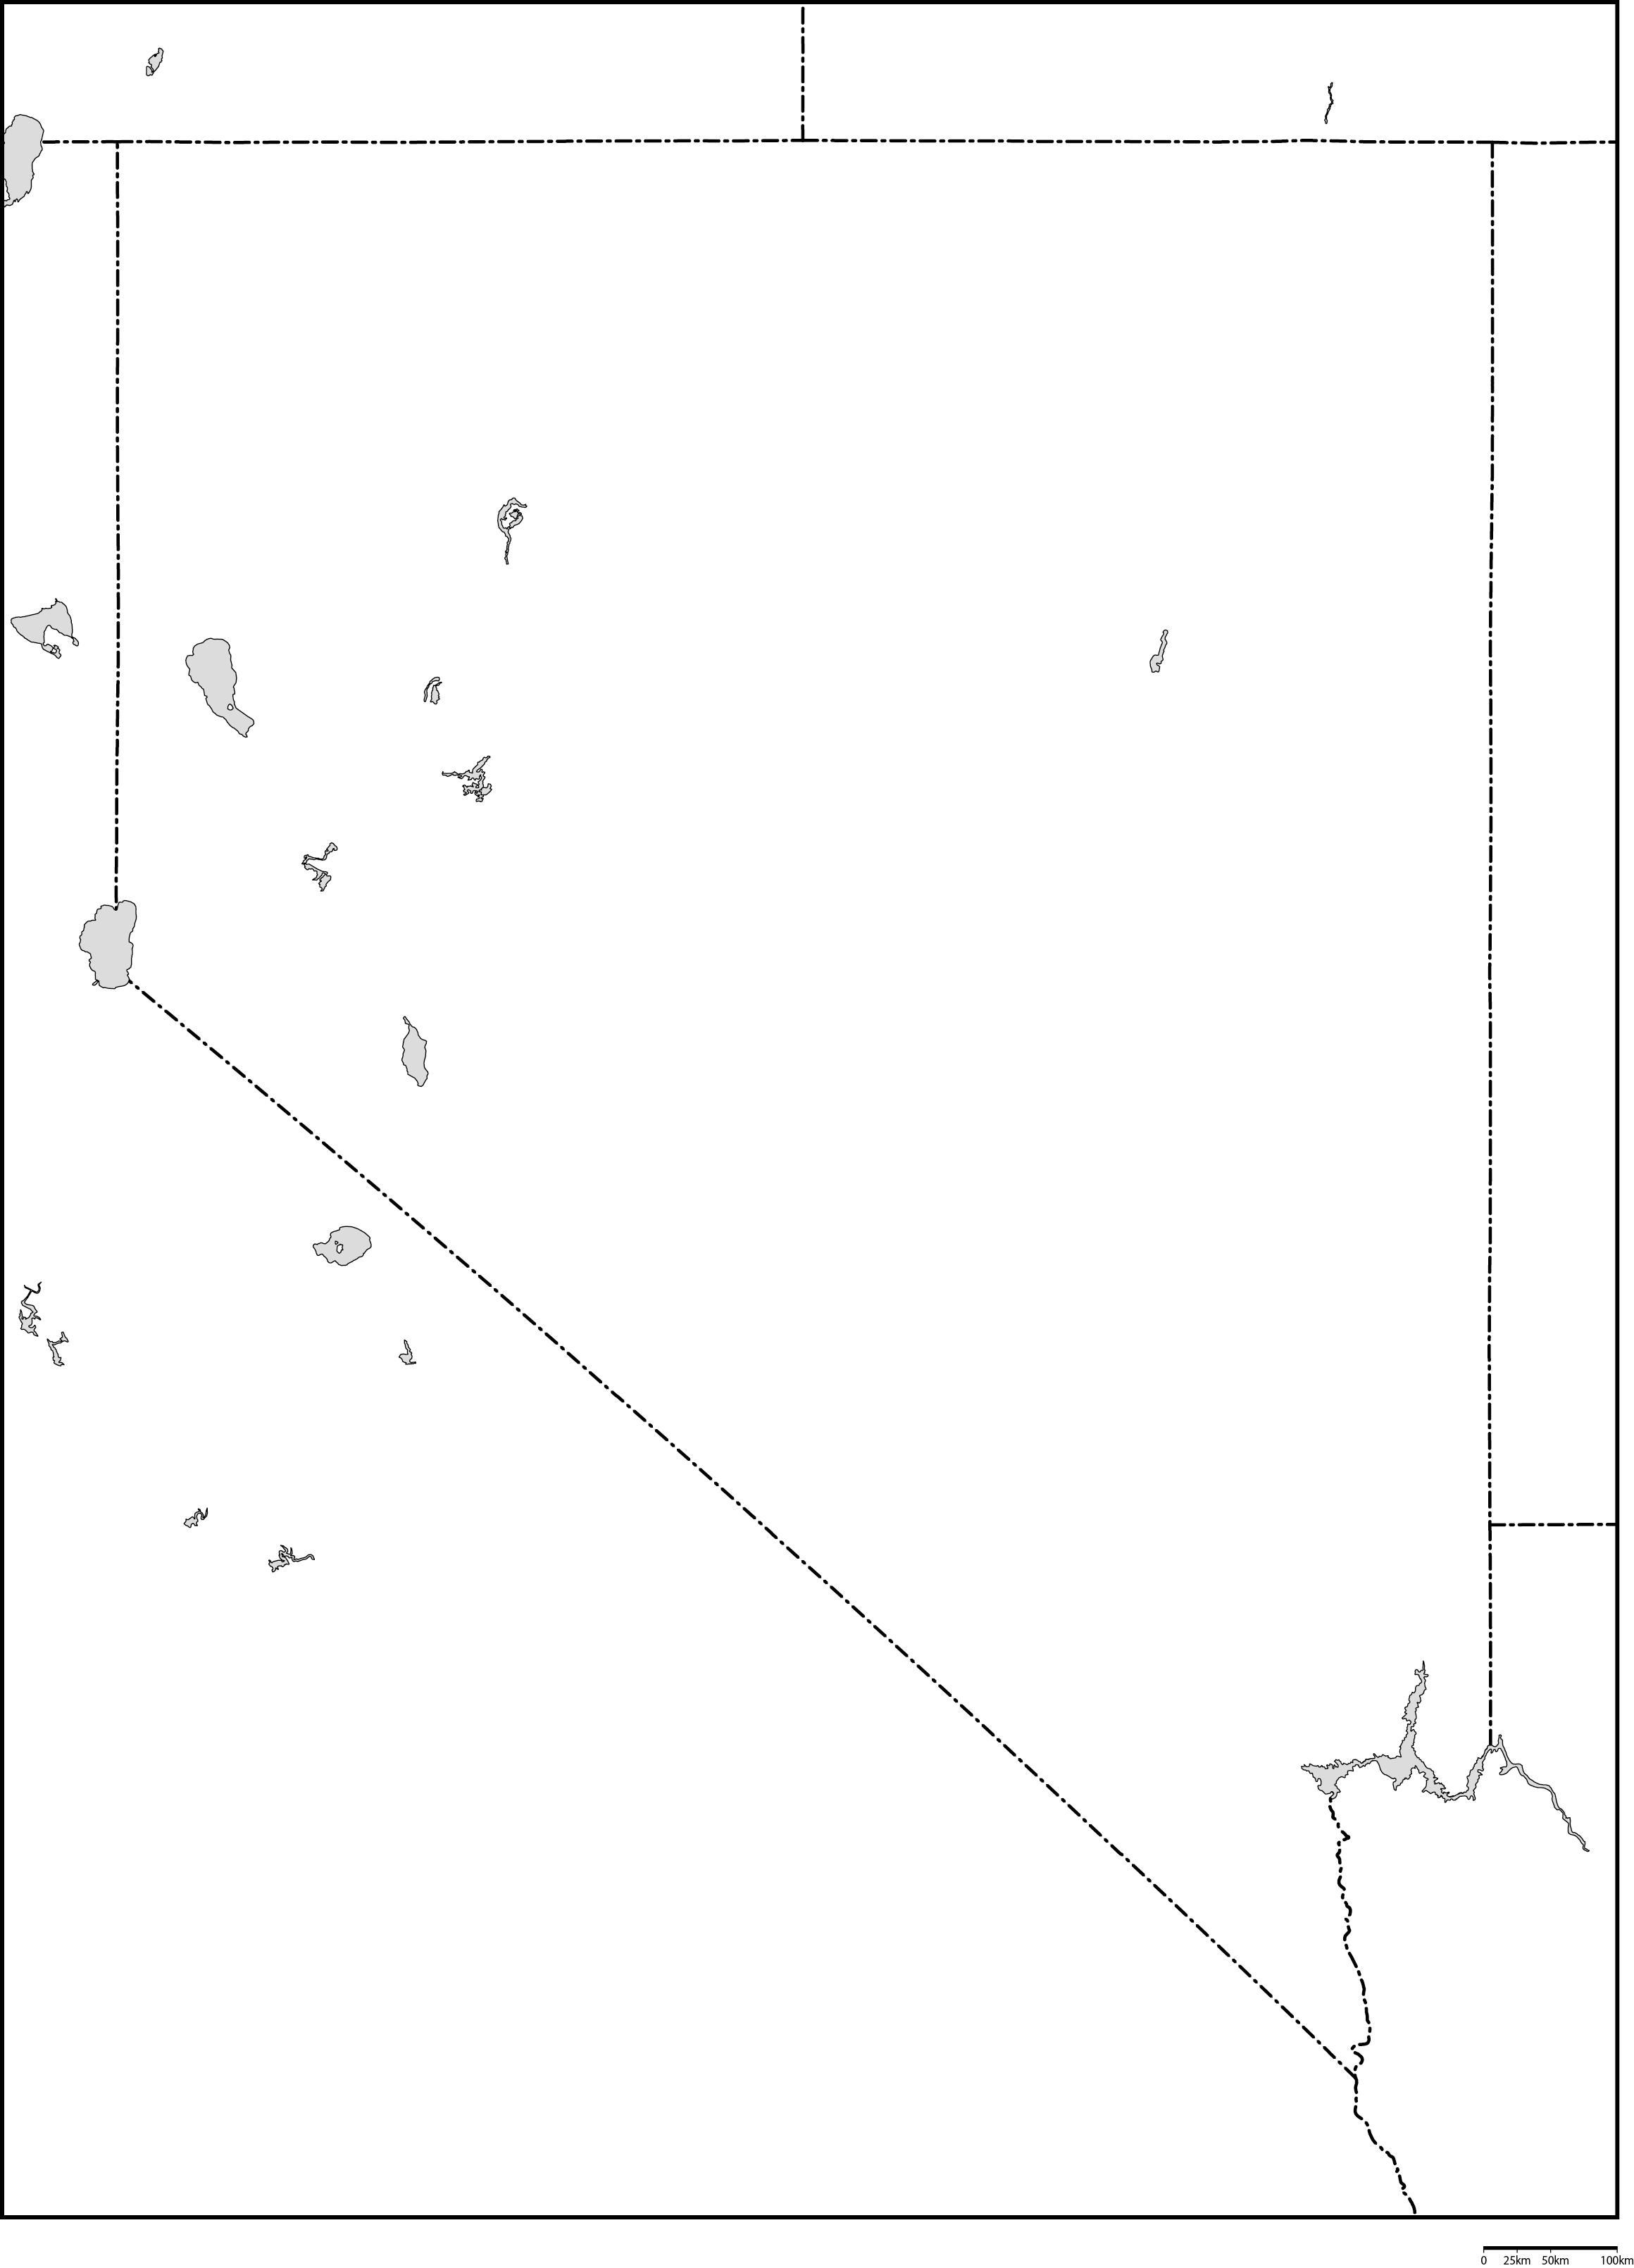 ネバダ州白地図フリーデータの画像